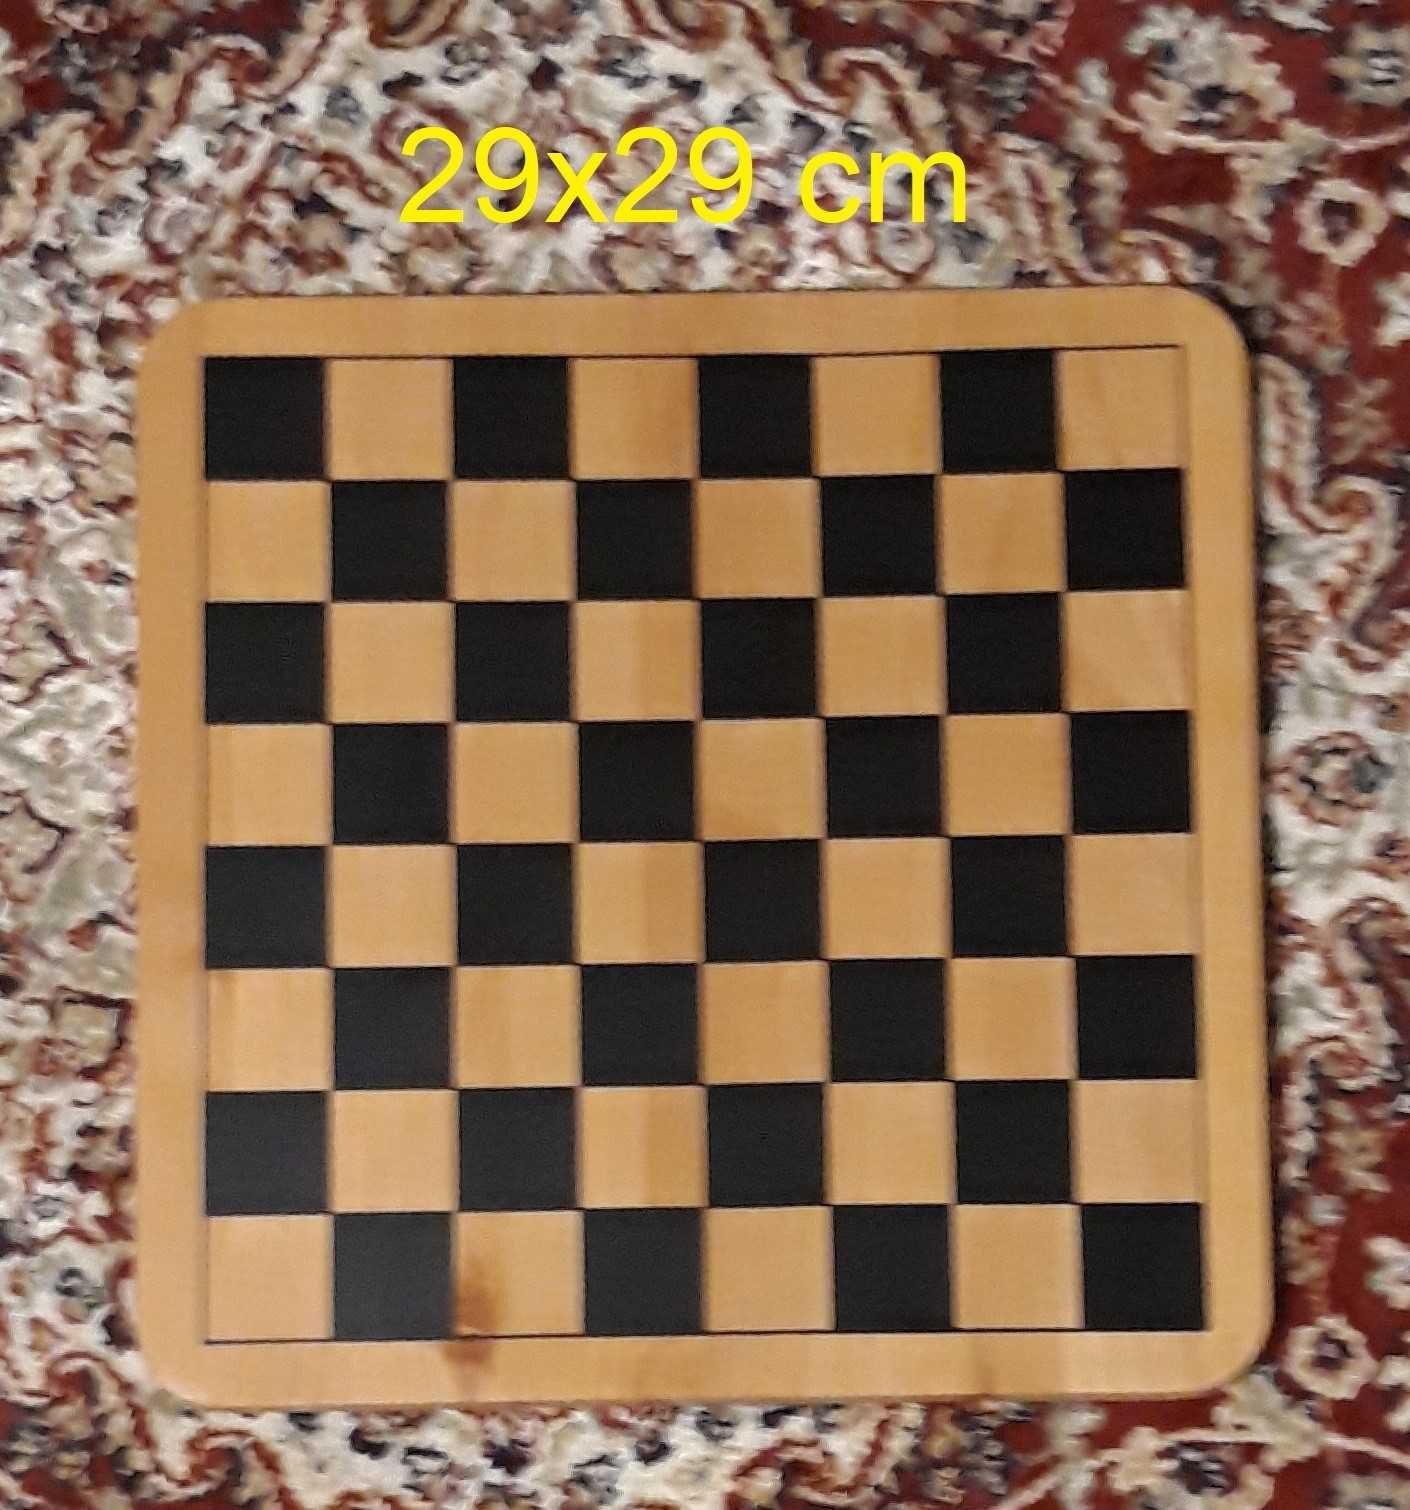 Tabuleiro de jogo de Xadrez, Échecs, Chess.